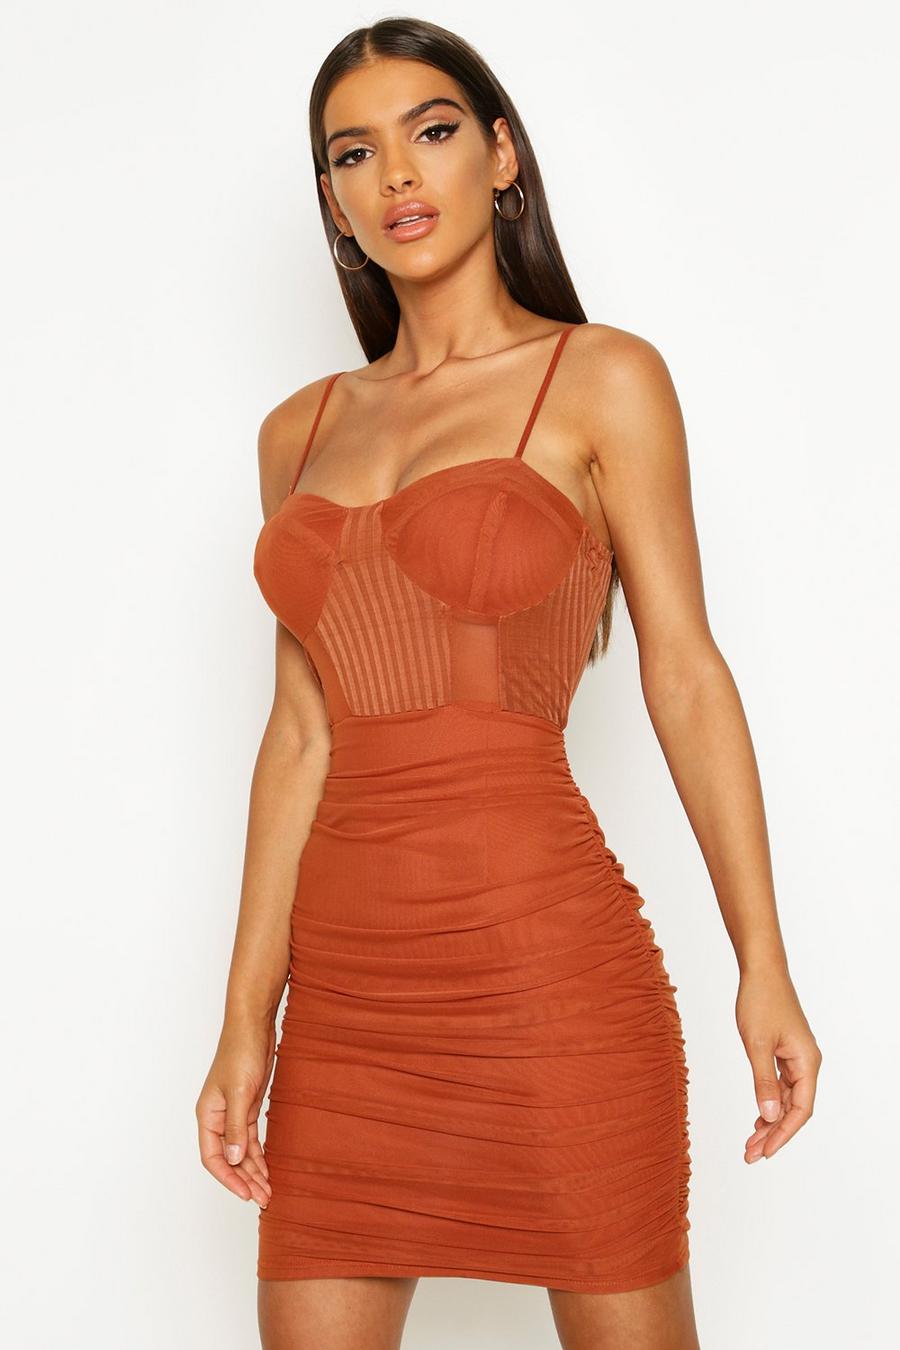 חלודה naranja שמלת מיני בד רשת עם קפלים